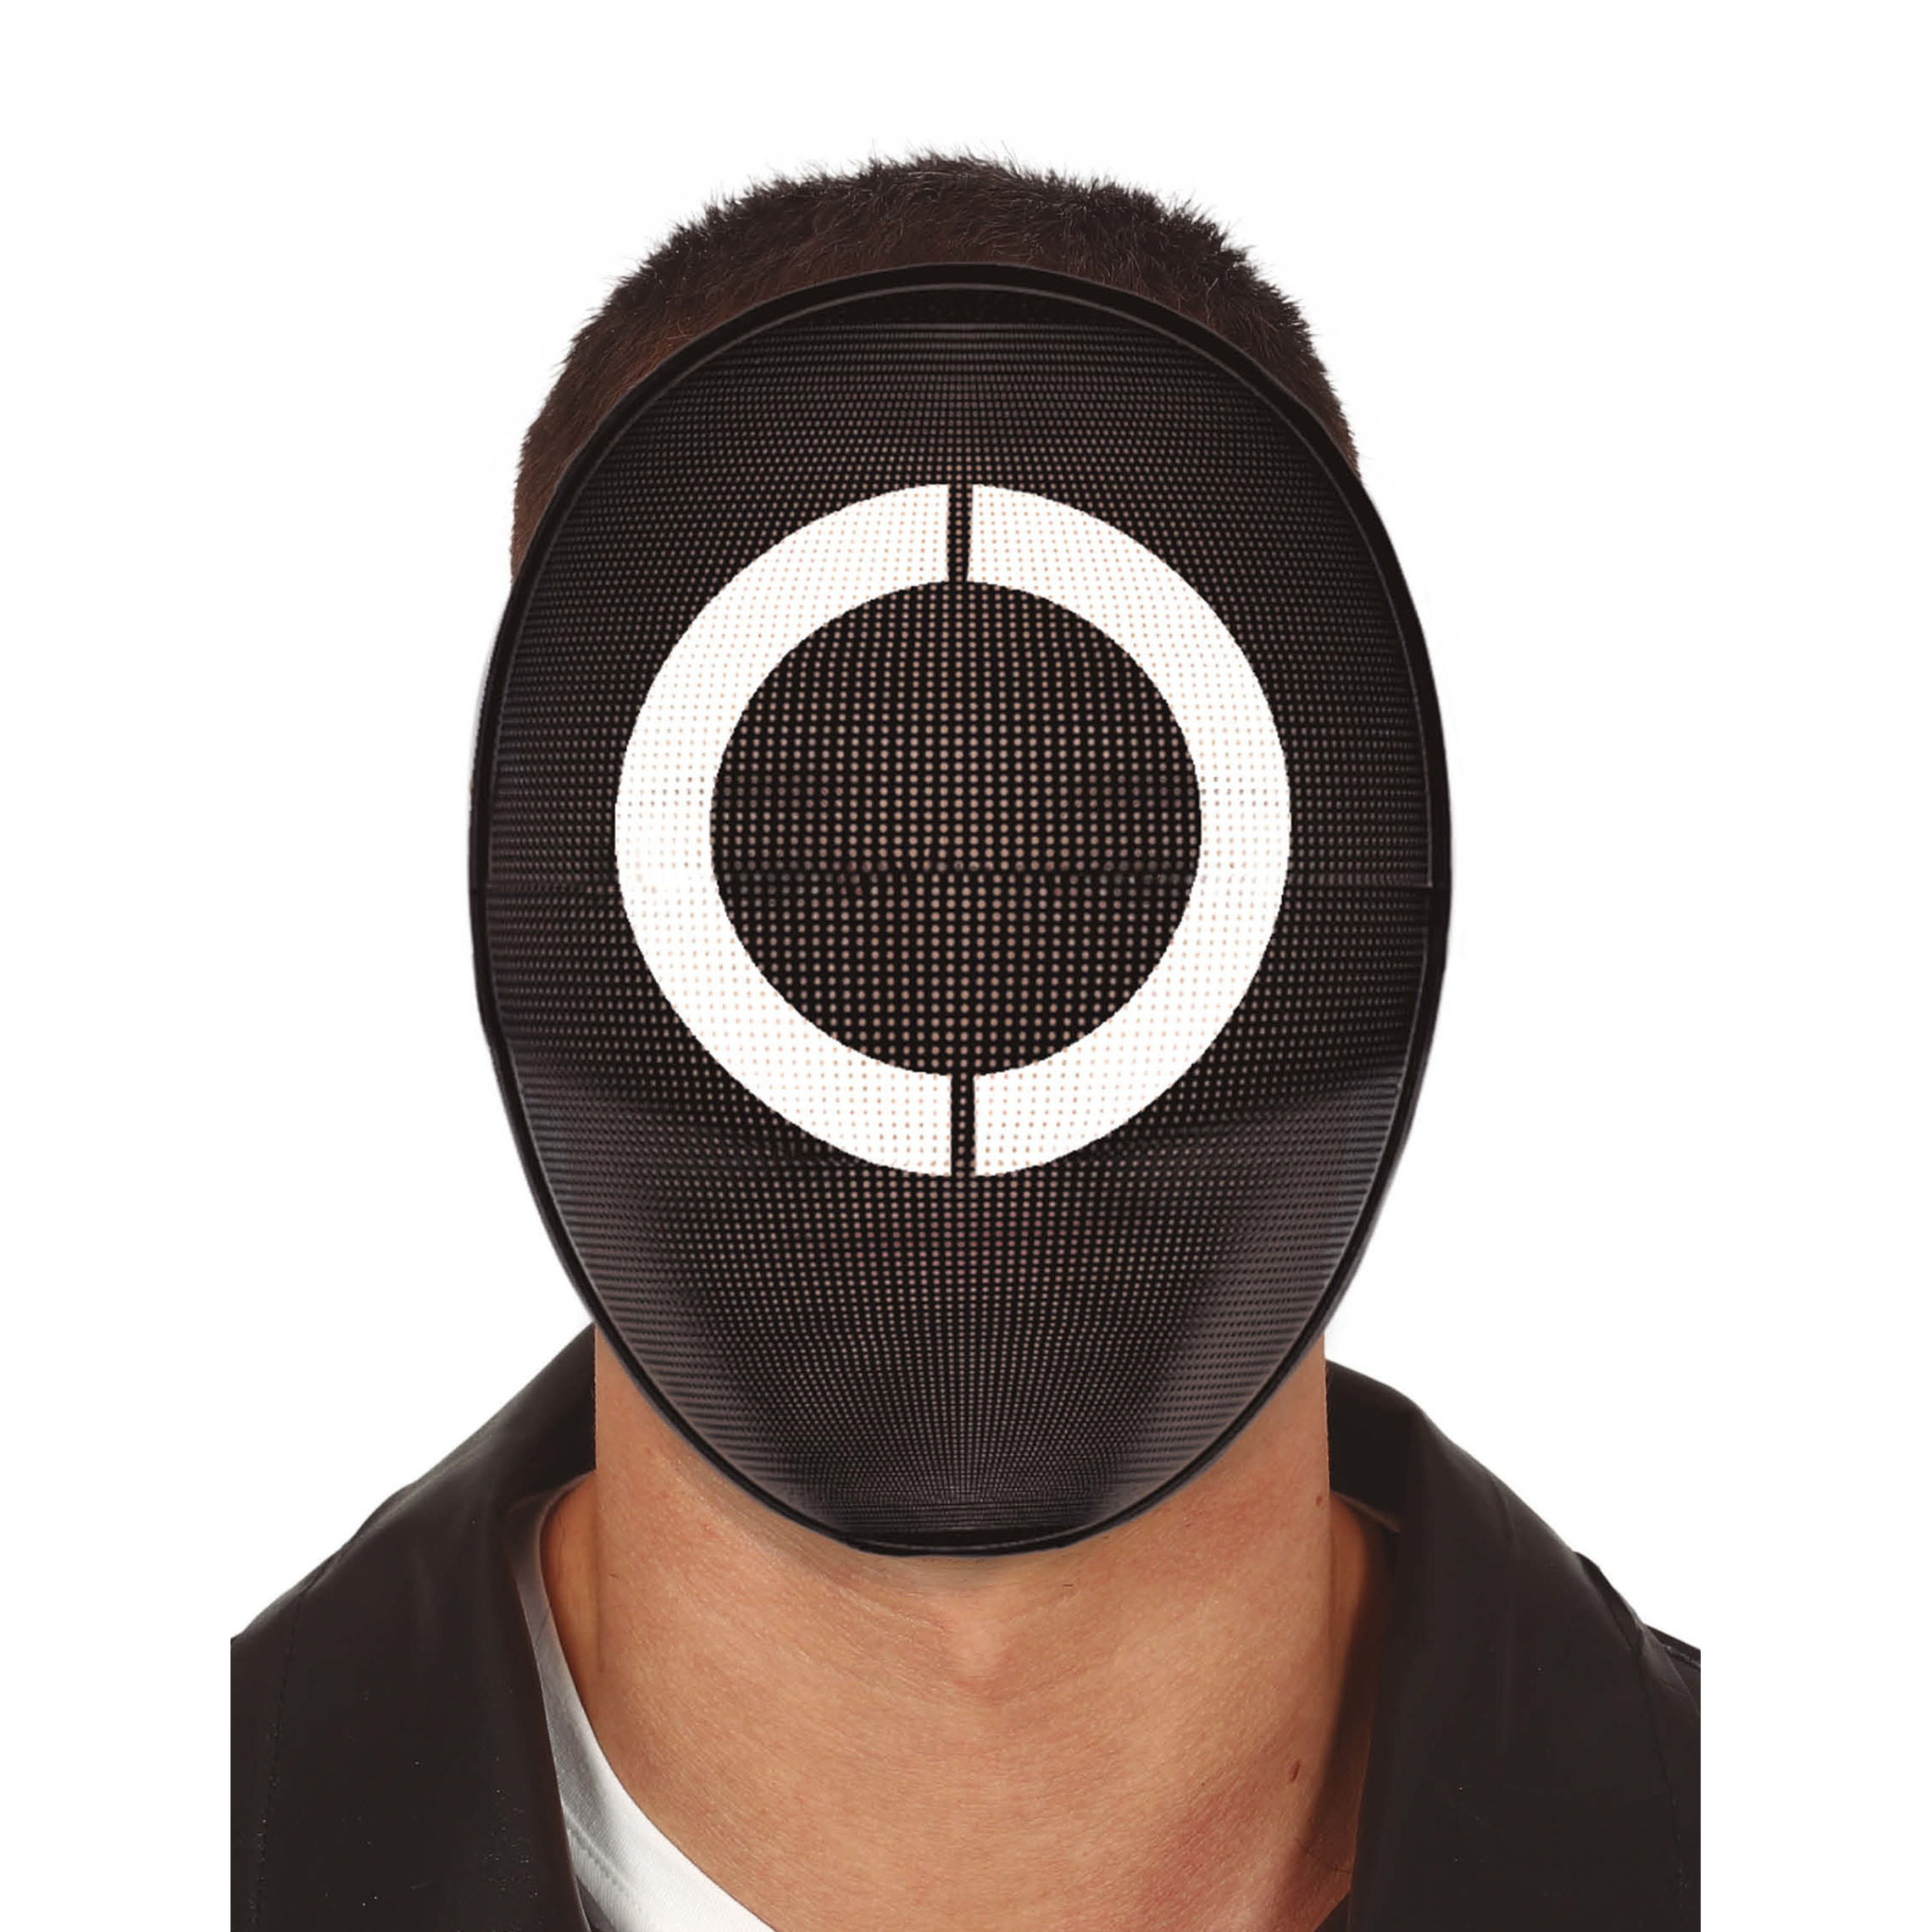 Verkleed masker game cirkel bekend van tv serie